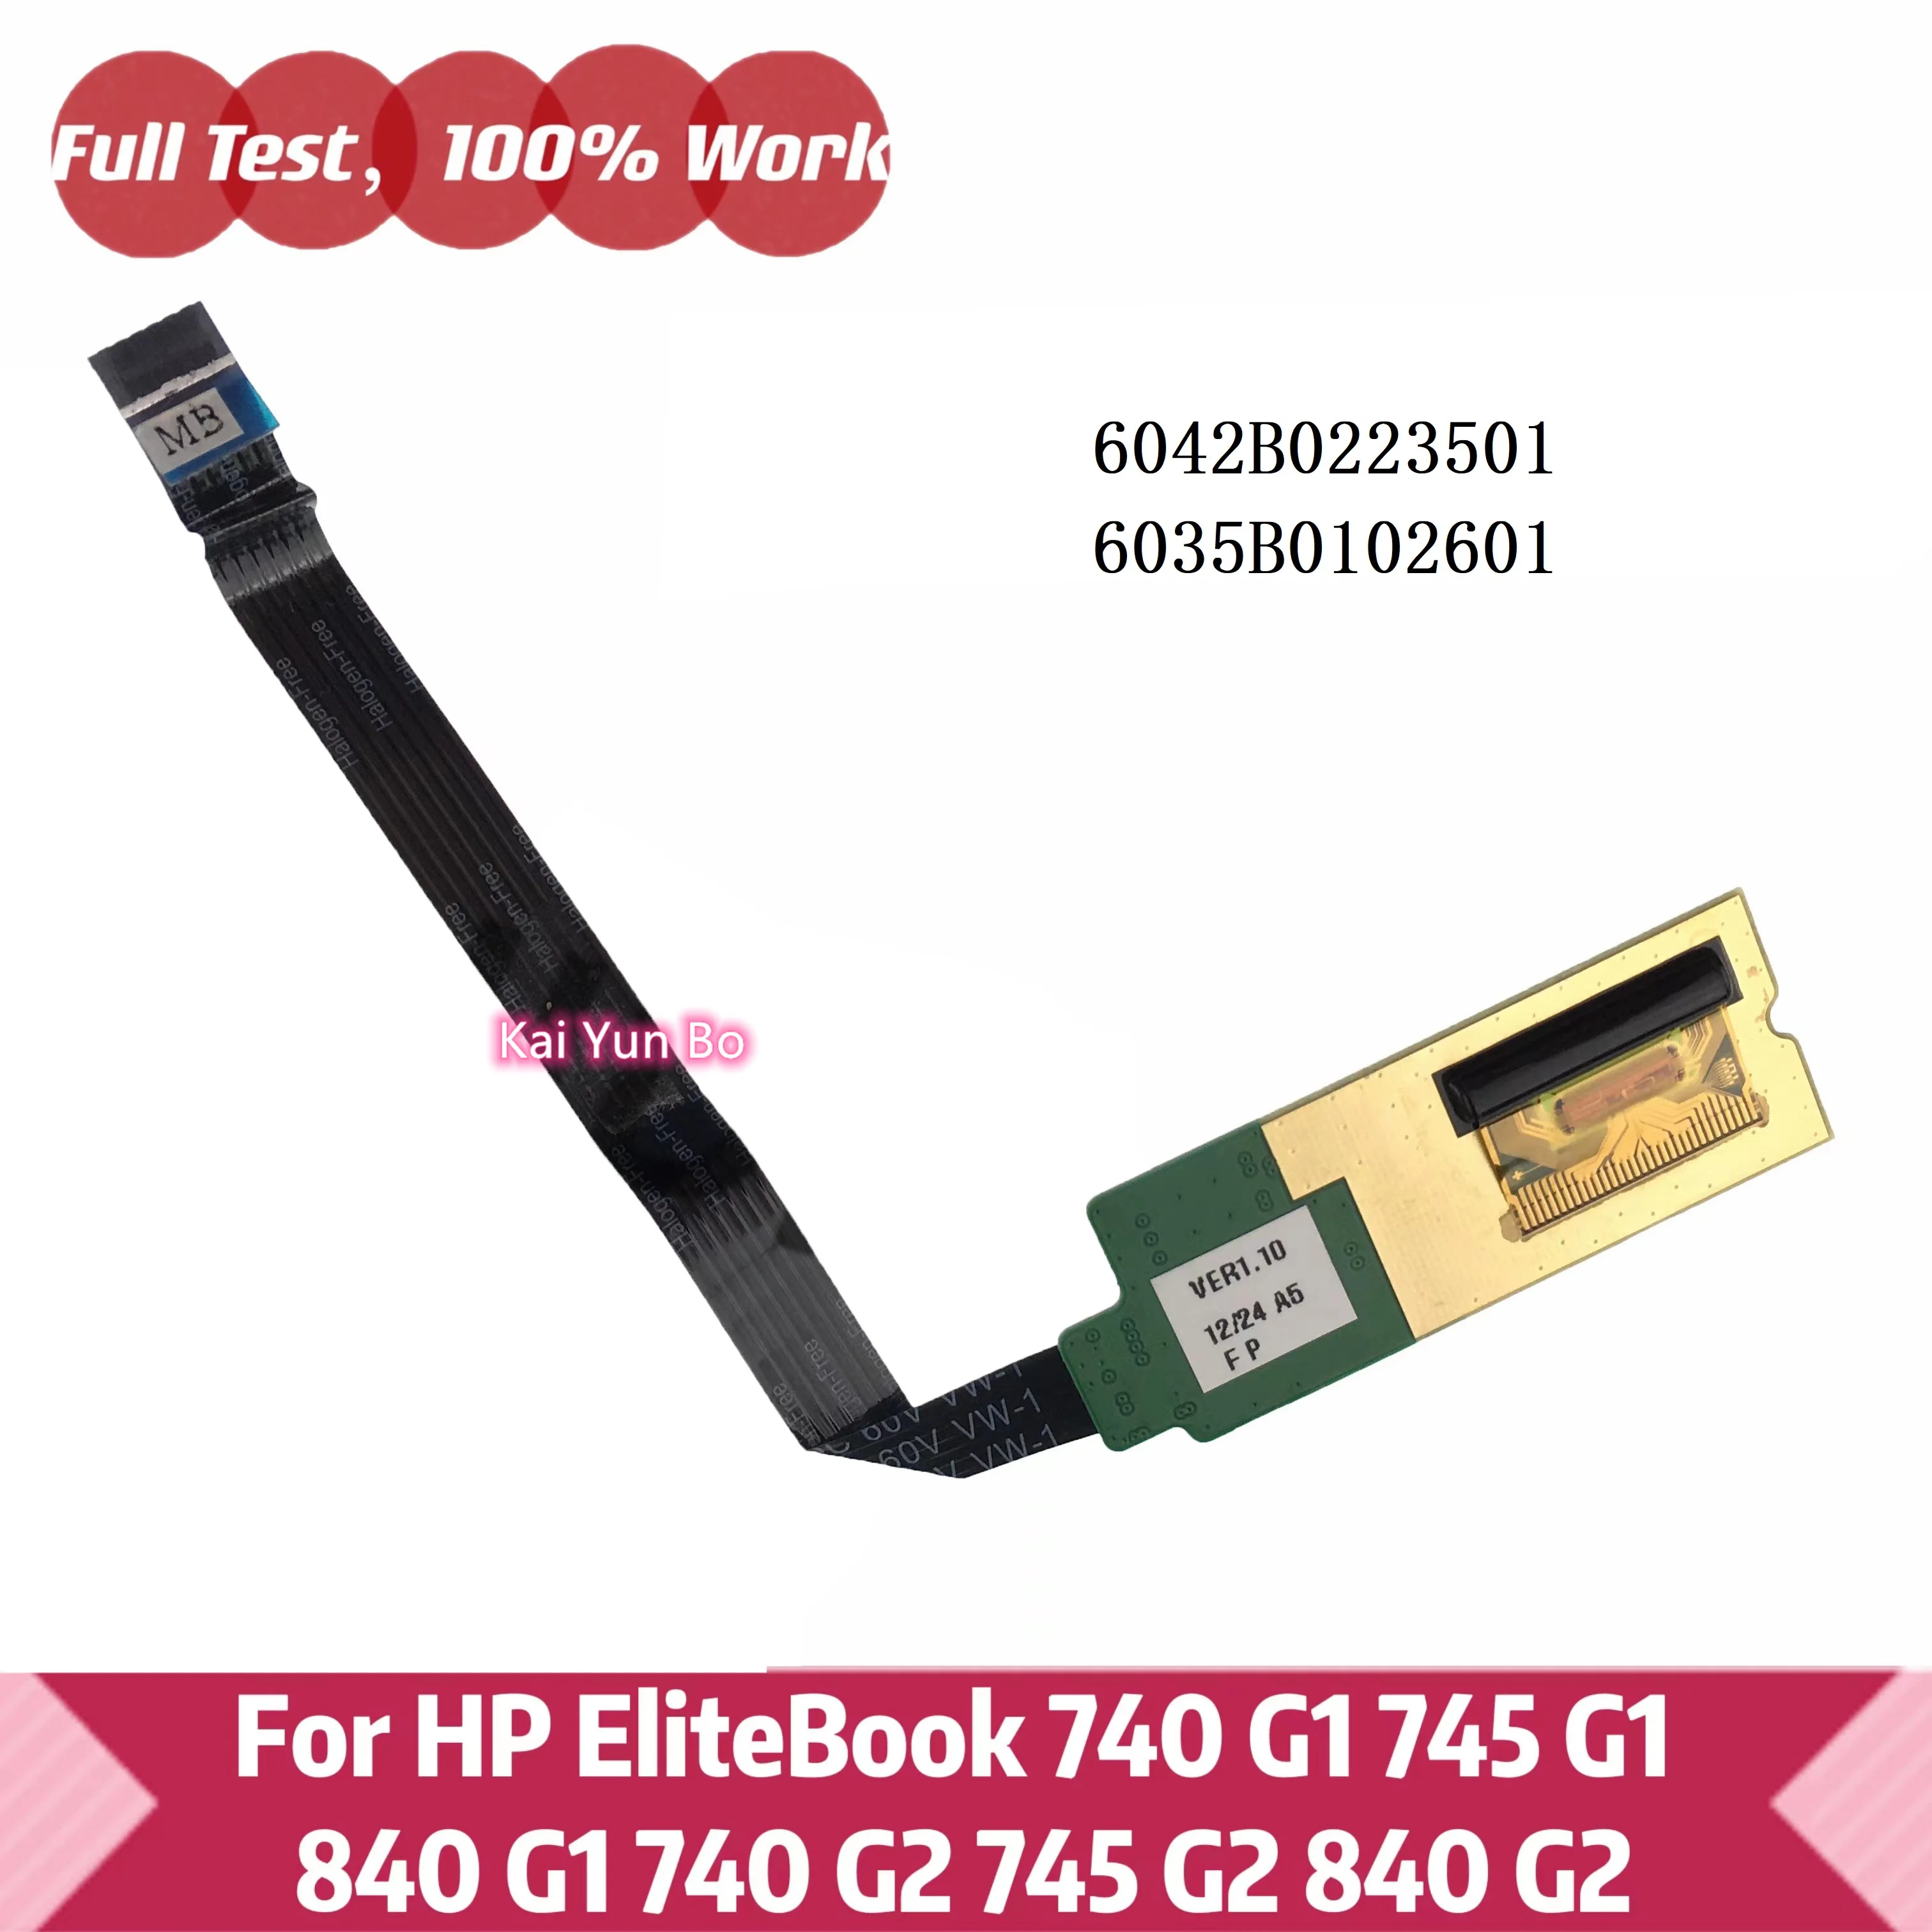 

For HP EliteBook 740 G1 745 840 850 ZB14 Fingerprint Board Sensor/Reader & Cable 6042B0223501 6035B0102601